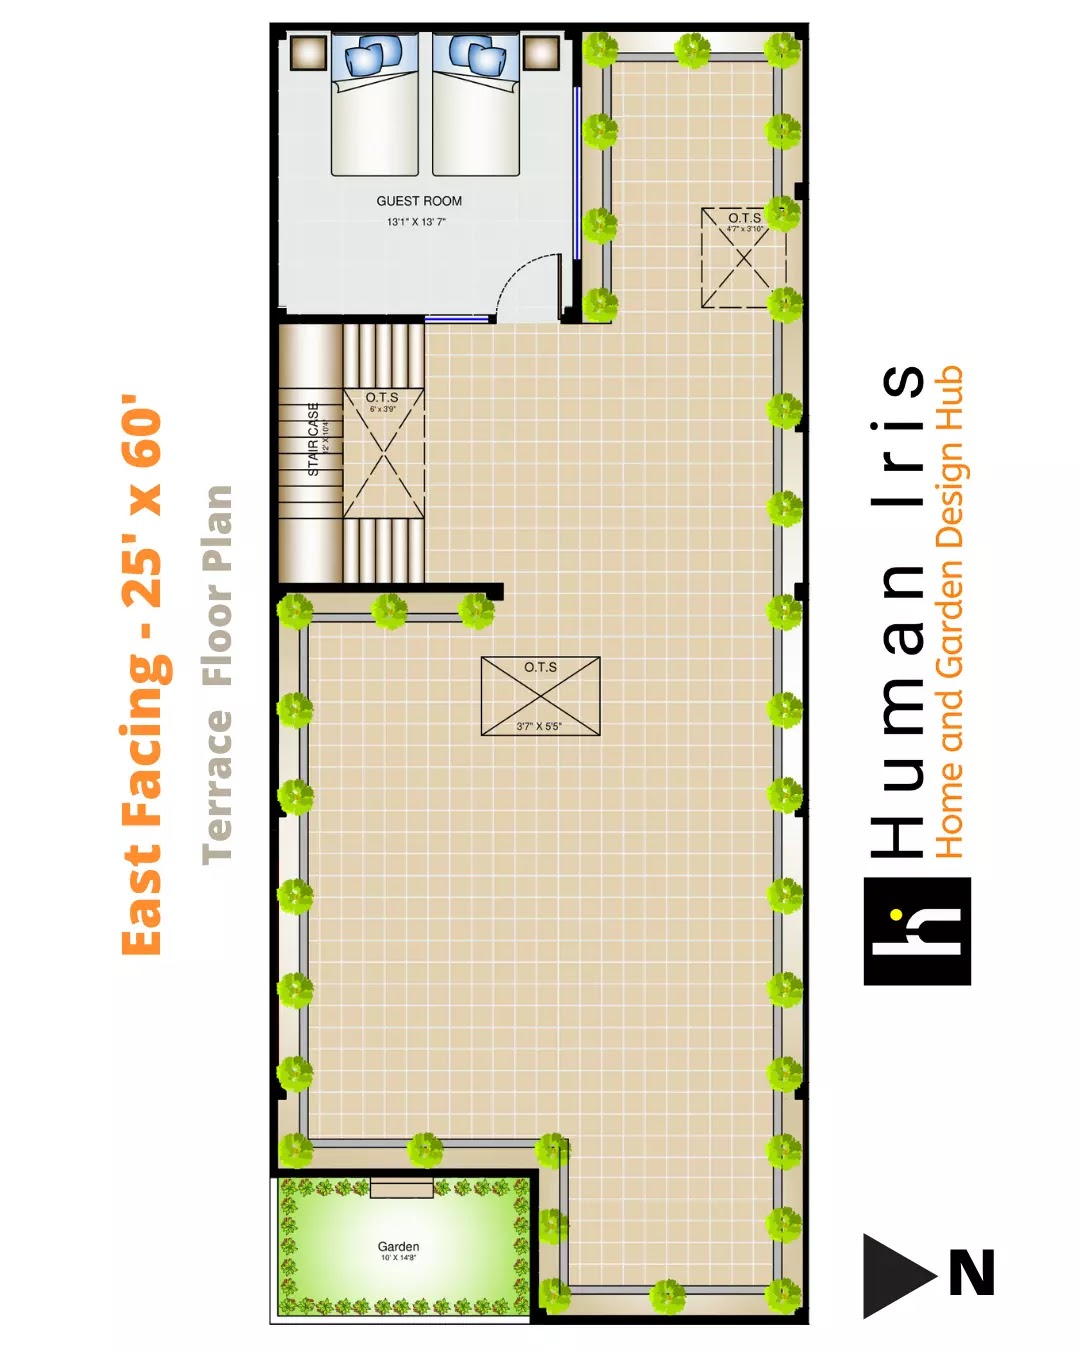 25' x 60' Residence Layout Plan